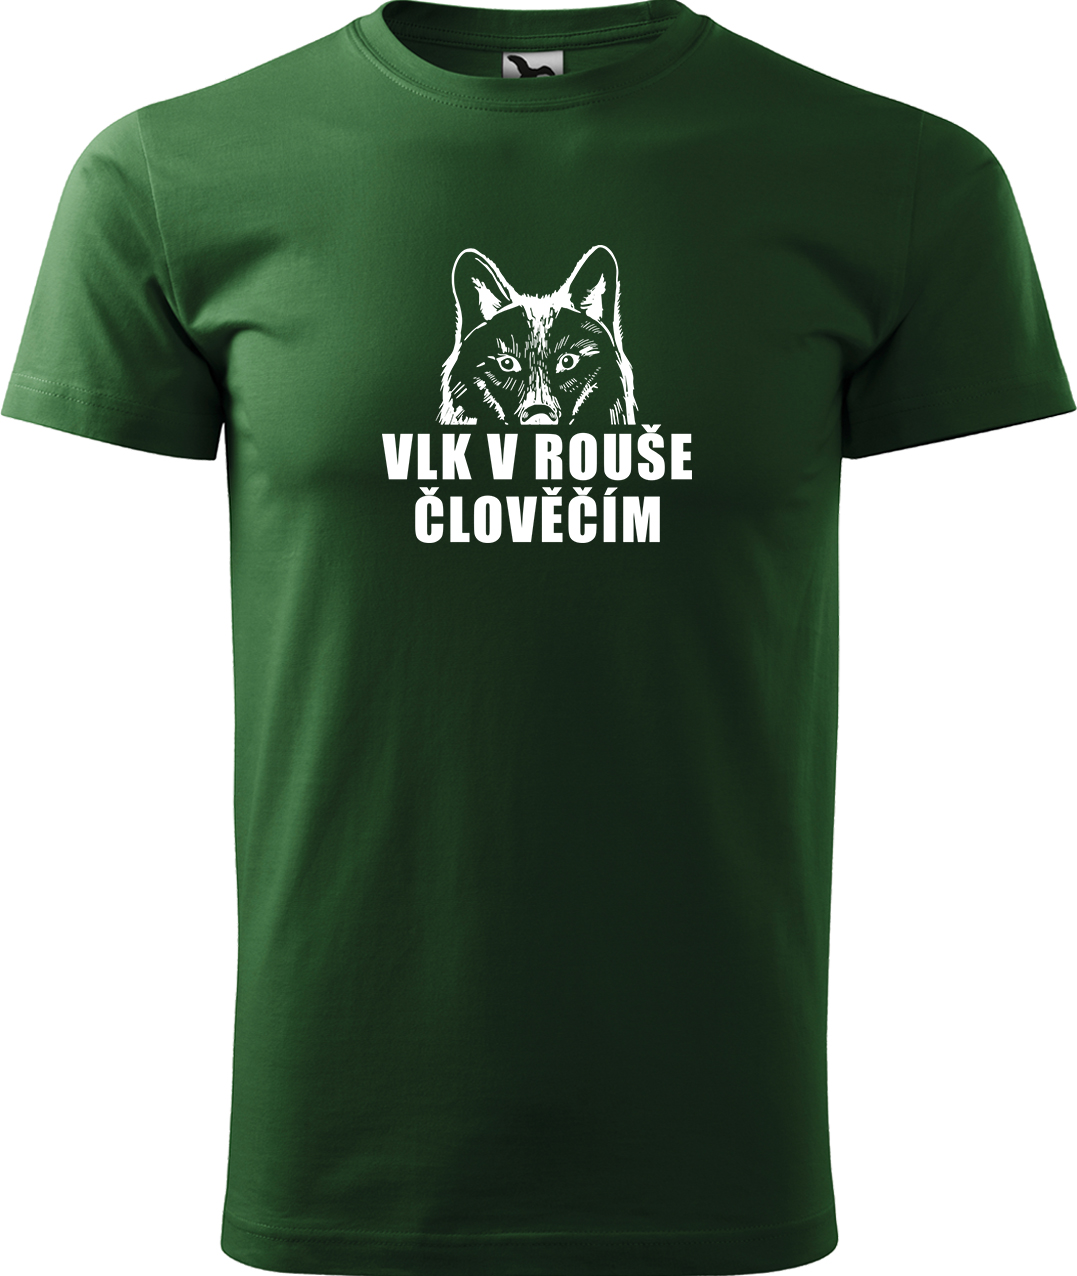 Pánské tričko s vlkem - Vlk v rouše člověčím Velikost: 3XL, Barva: Lahvově zelená (06), Střih: pánský